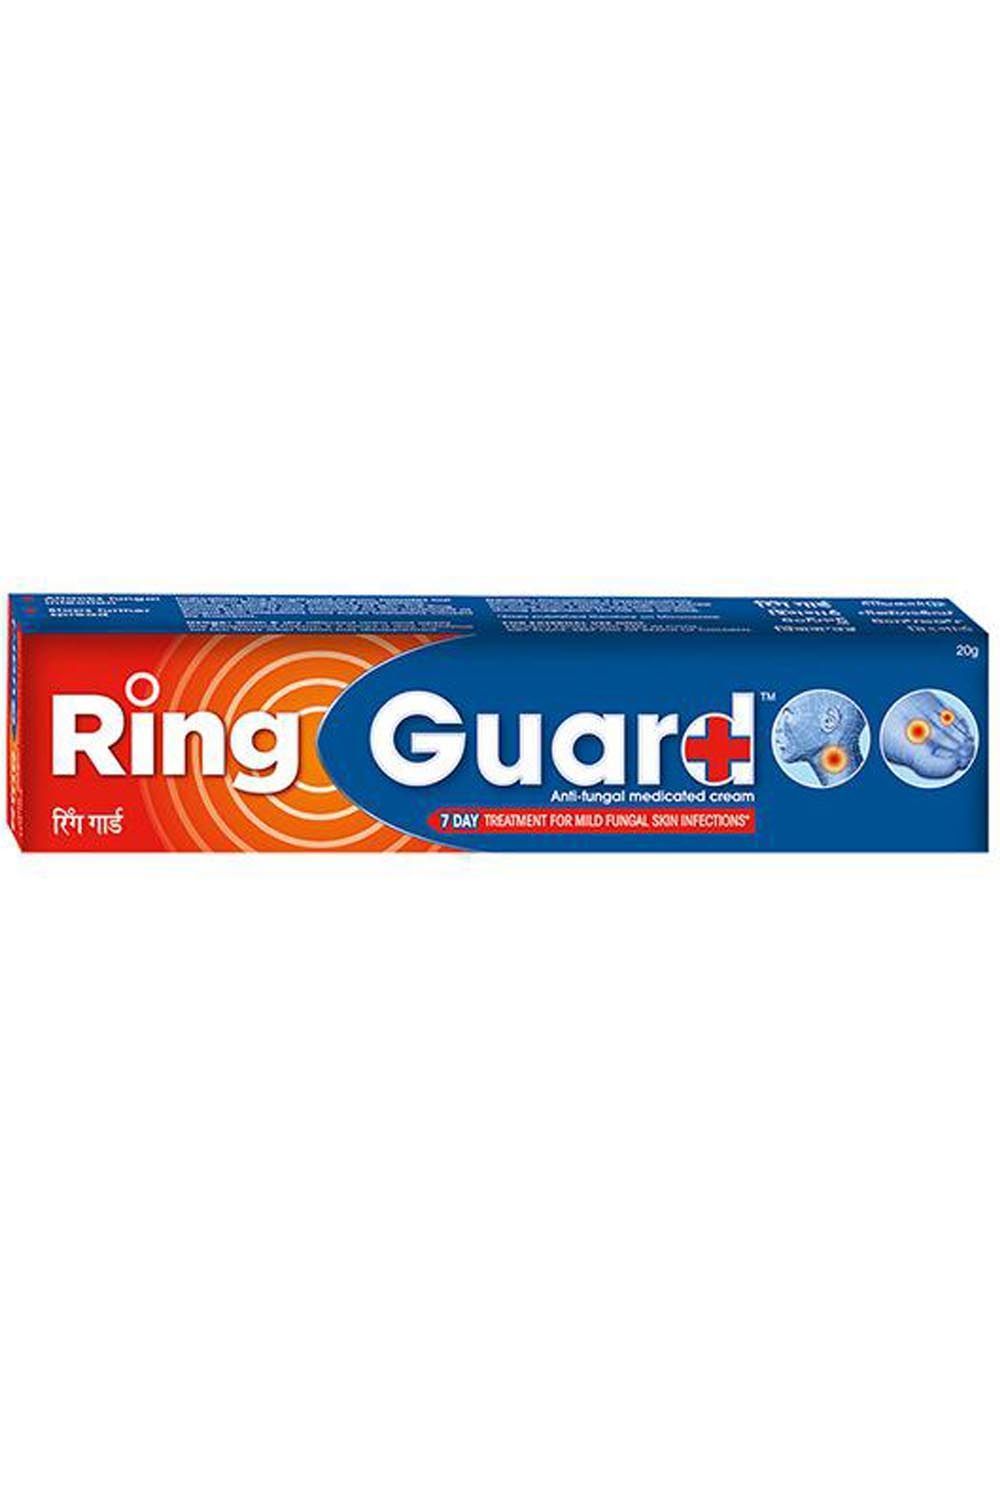  Ring Guard